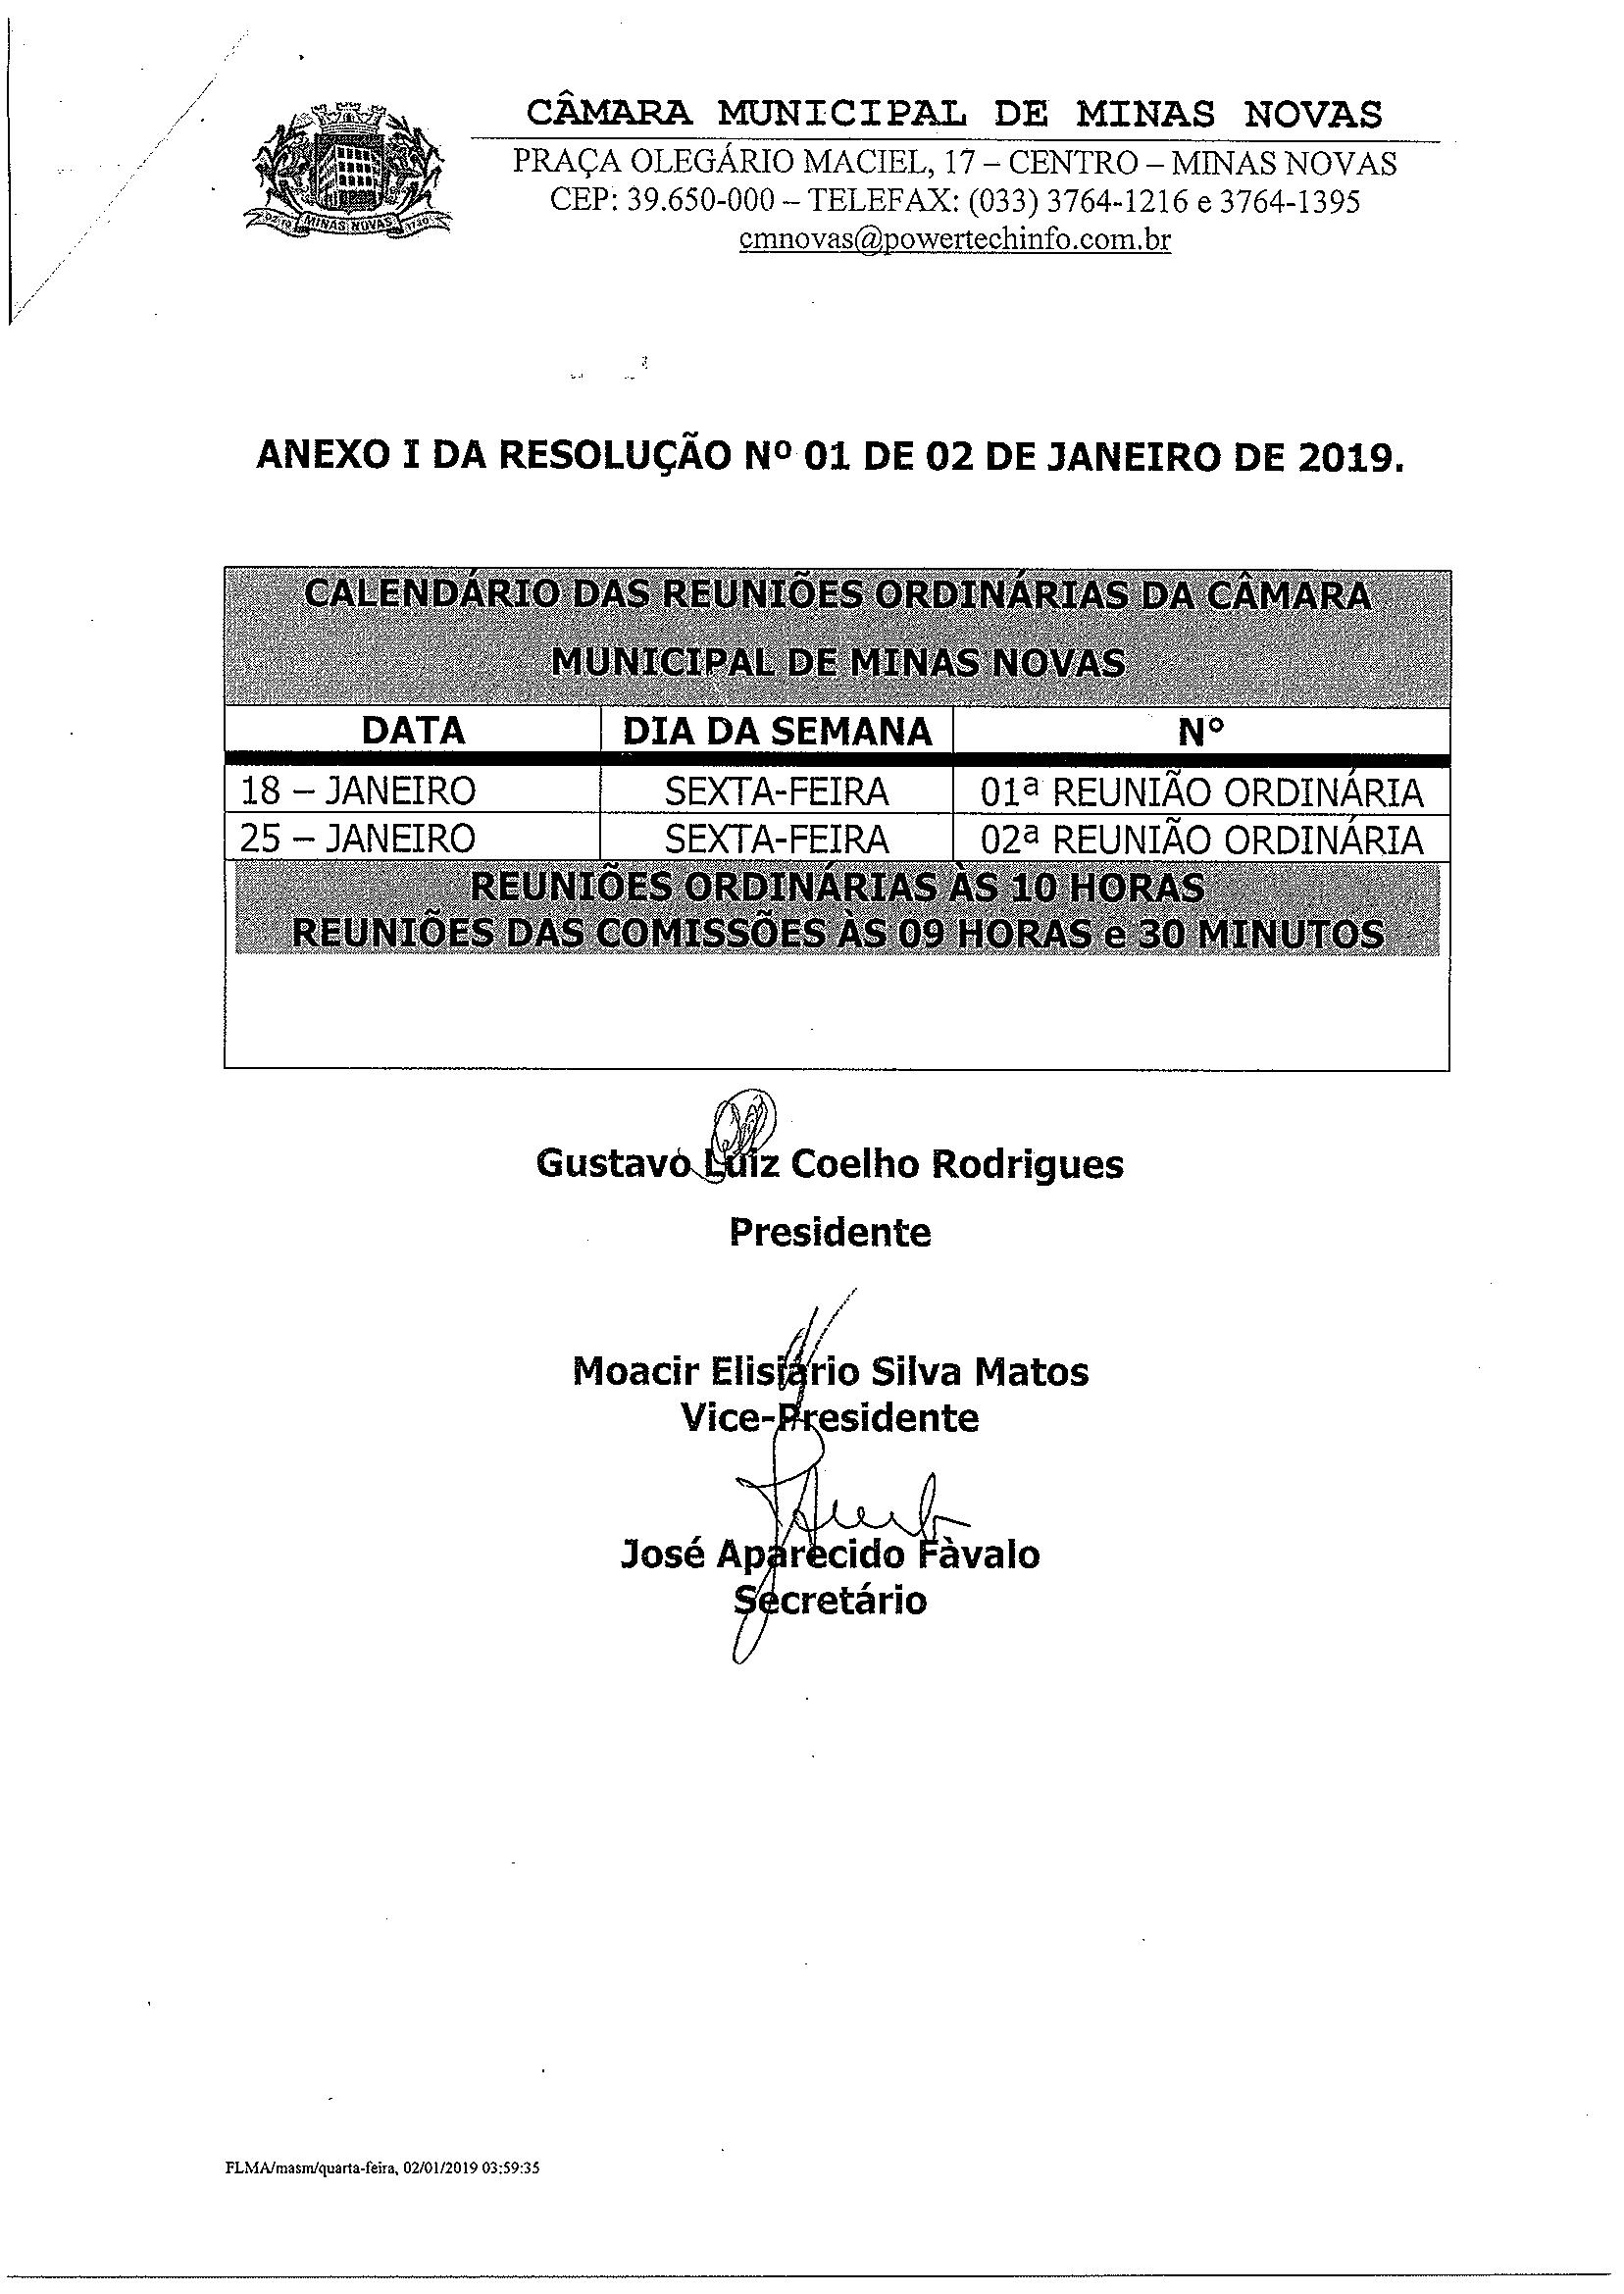 Calendário das Reuniões Ordinárias da Câmara Municipal de Minas Novas (Exercício de 2019) - Mês de janeiro